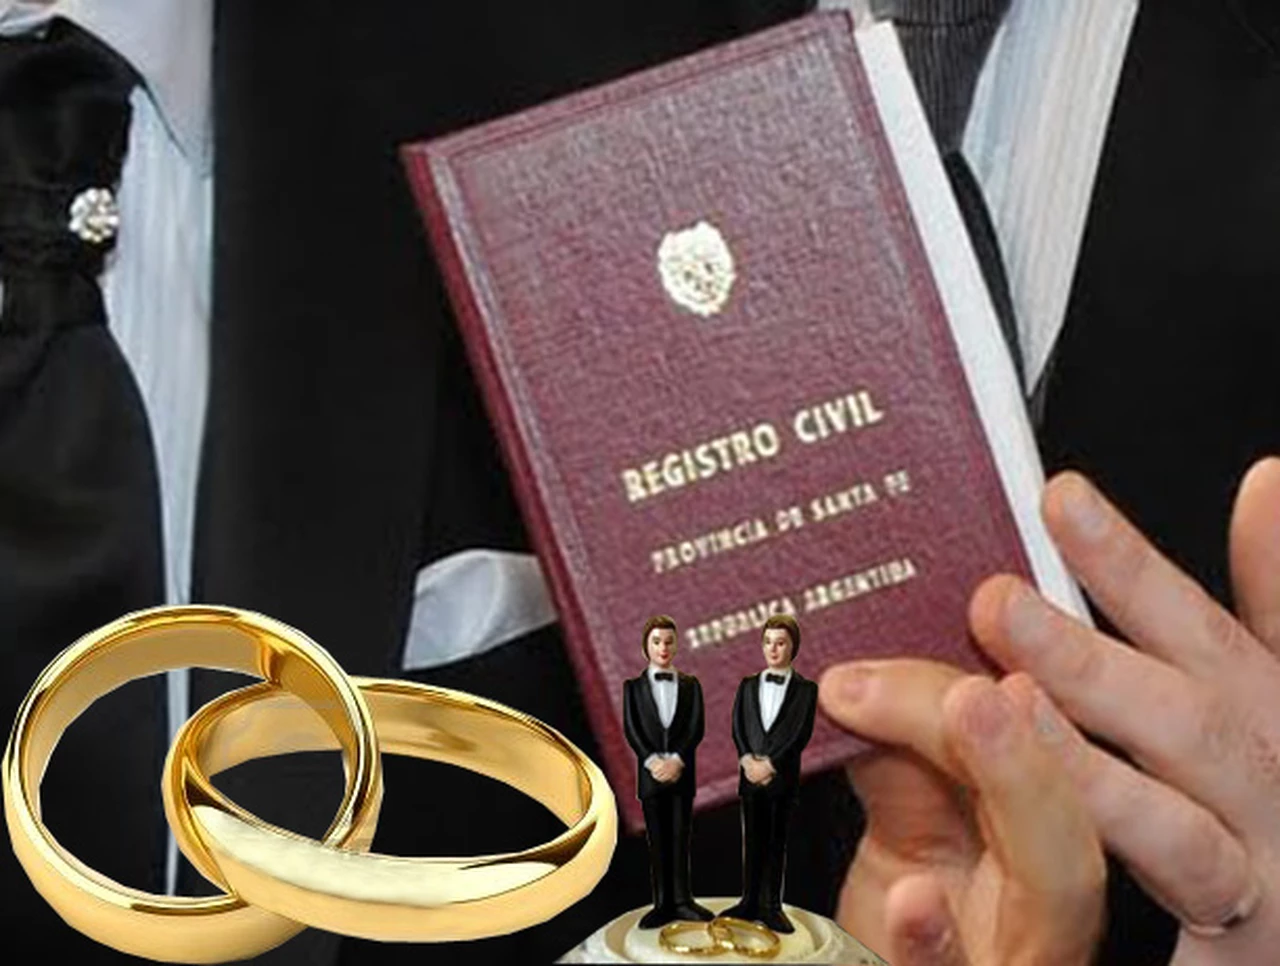 La ley de matrimonio igualitario cumple 3 años, con unas 7.000 bodas celebradas en todo el paí­s